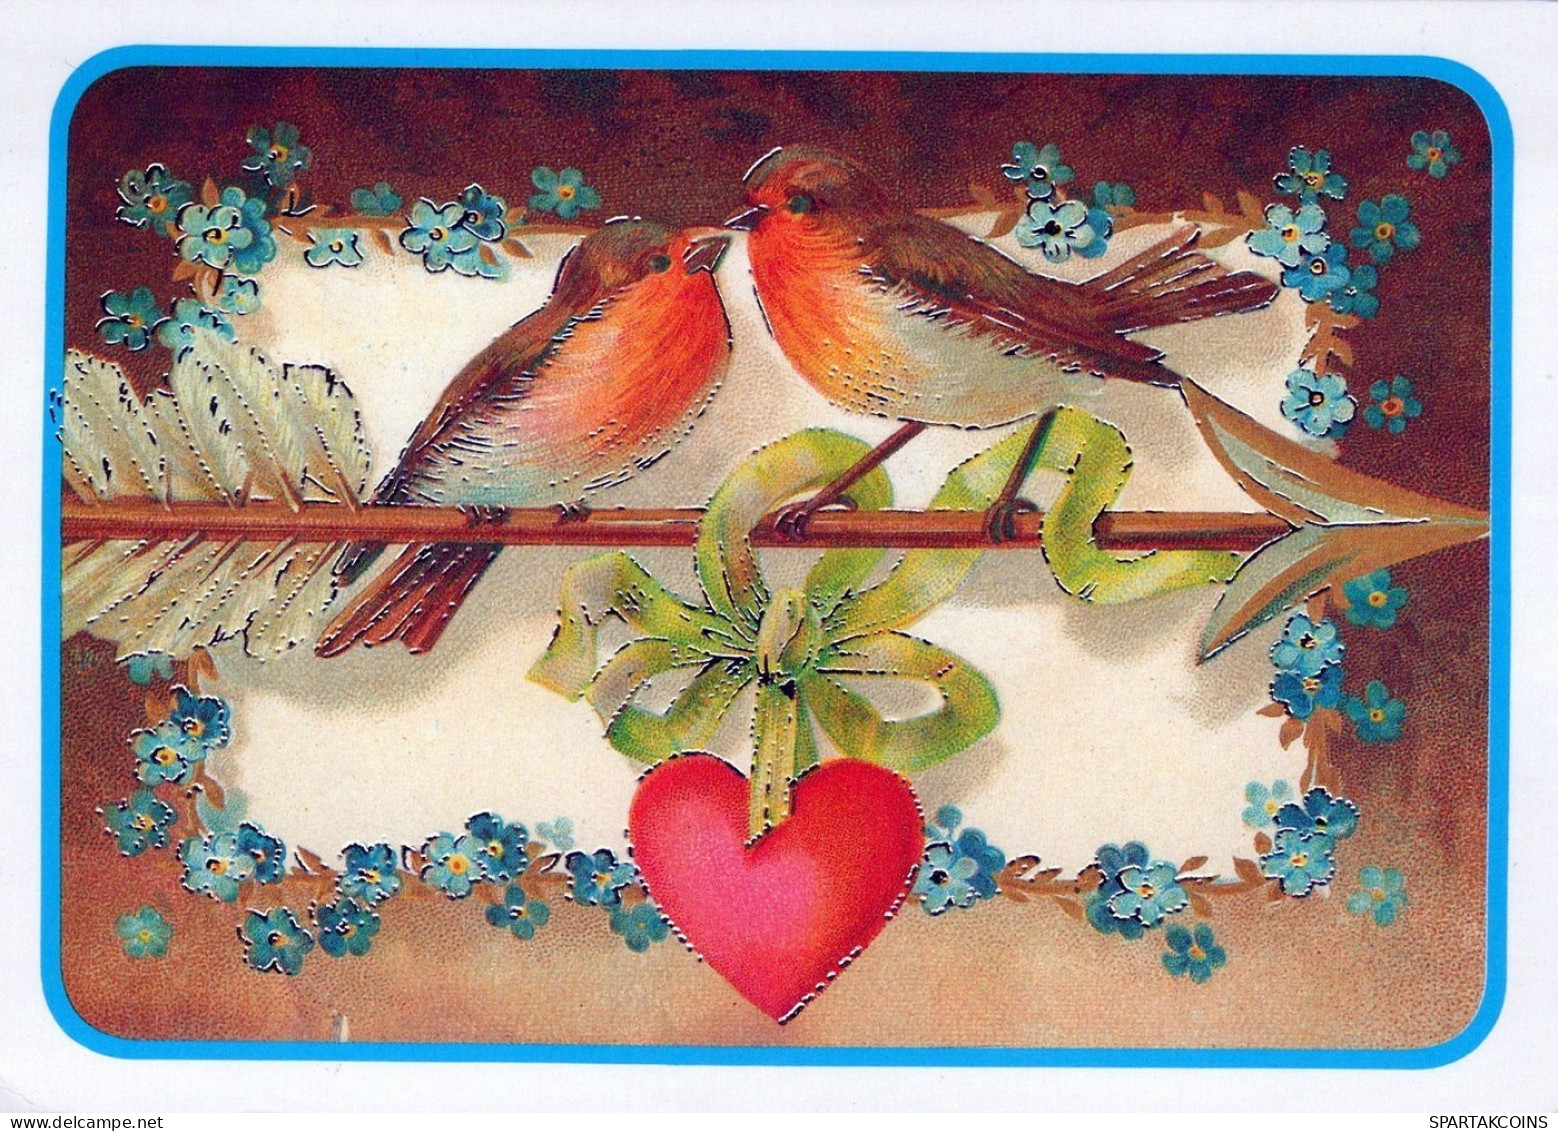 VOGEL Tier Vintage Ansichtskarte Postkarte CPSM #PAN175.DE - Oiseaux